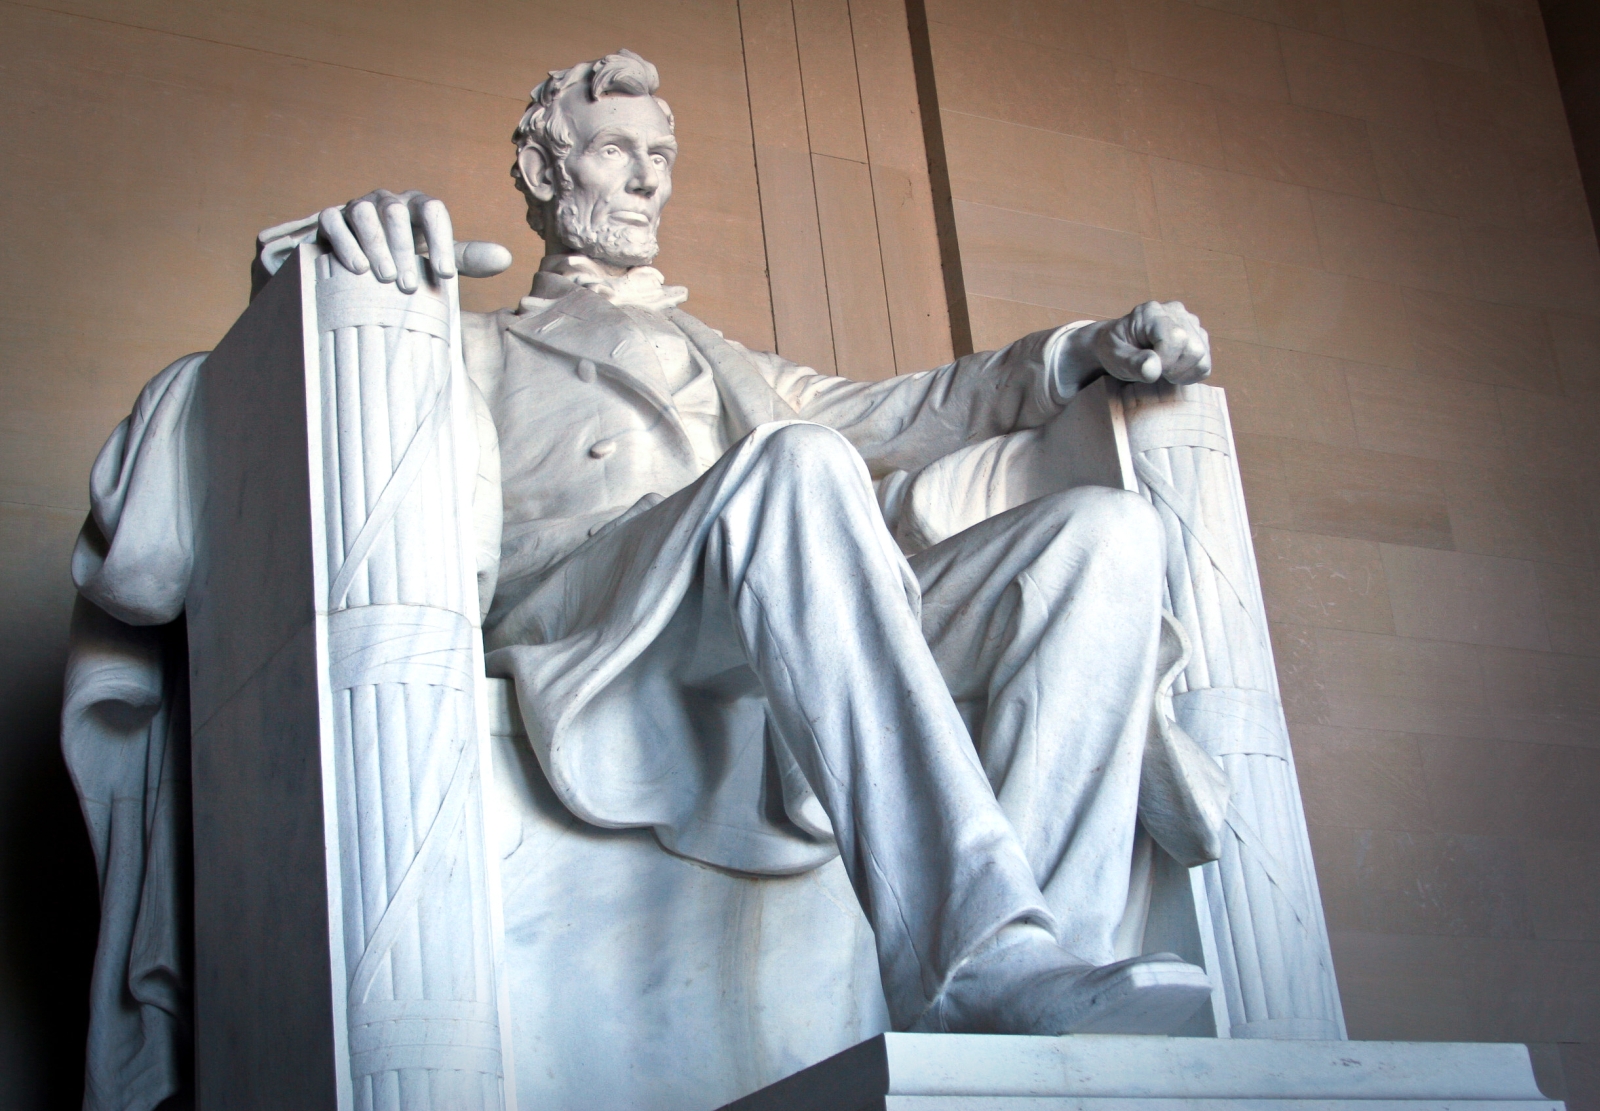 The Lincoln Memorial in Washington DC, USA